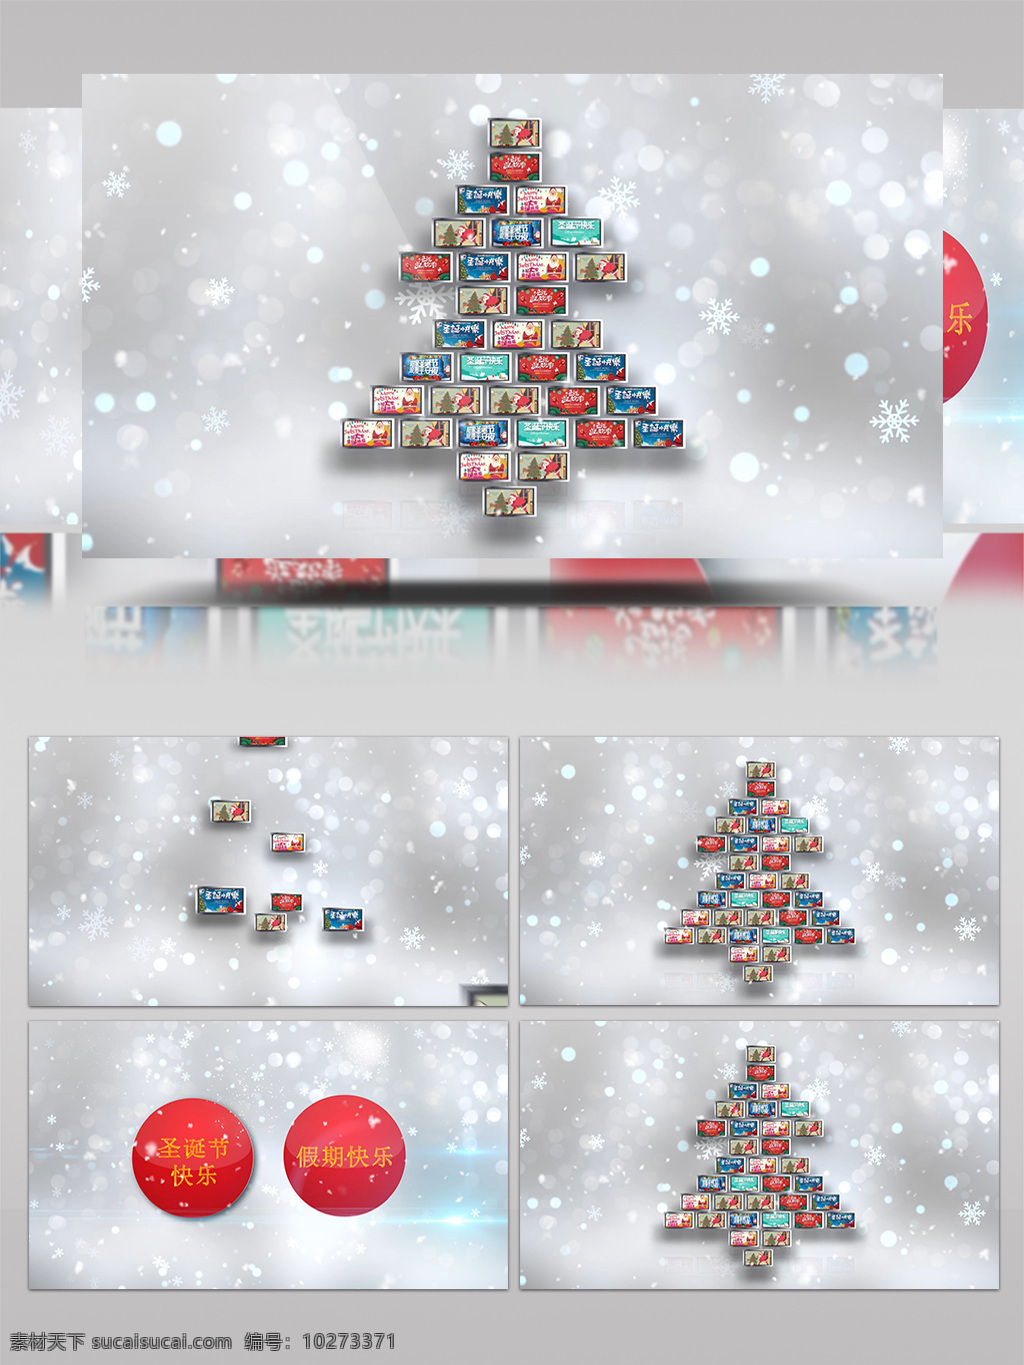 圣诞节 祝福 视频 开场 ae 模板 相册 包装 雪景 雪花 片头 片尾 周年 日 纪念 展示 冰雪 麋鹿 圣诞老人